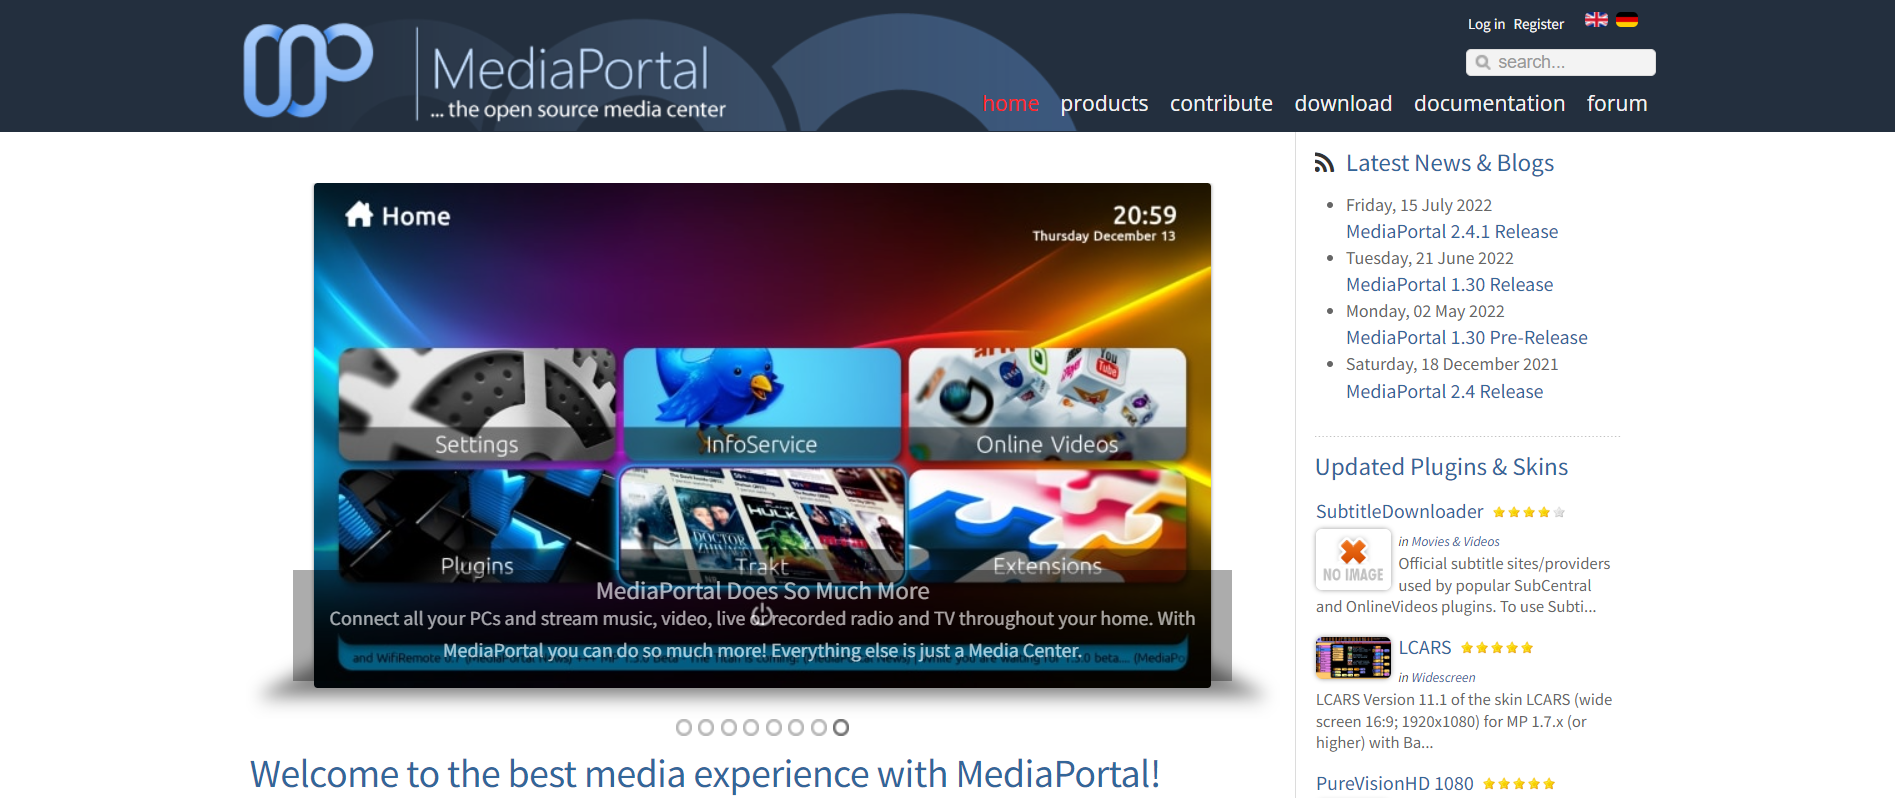 Media Portal